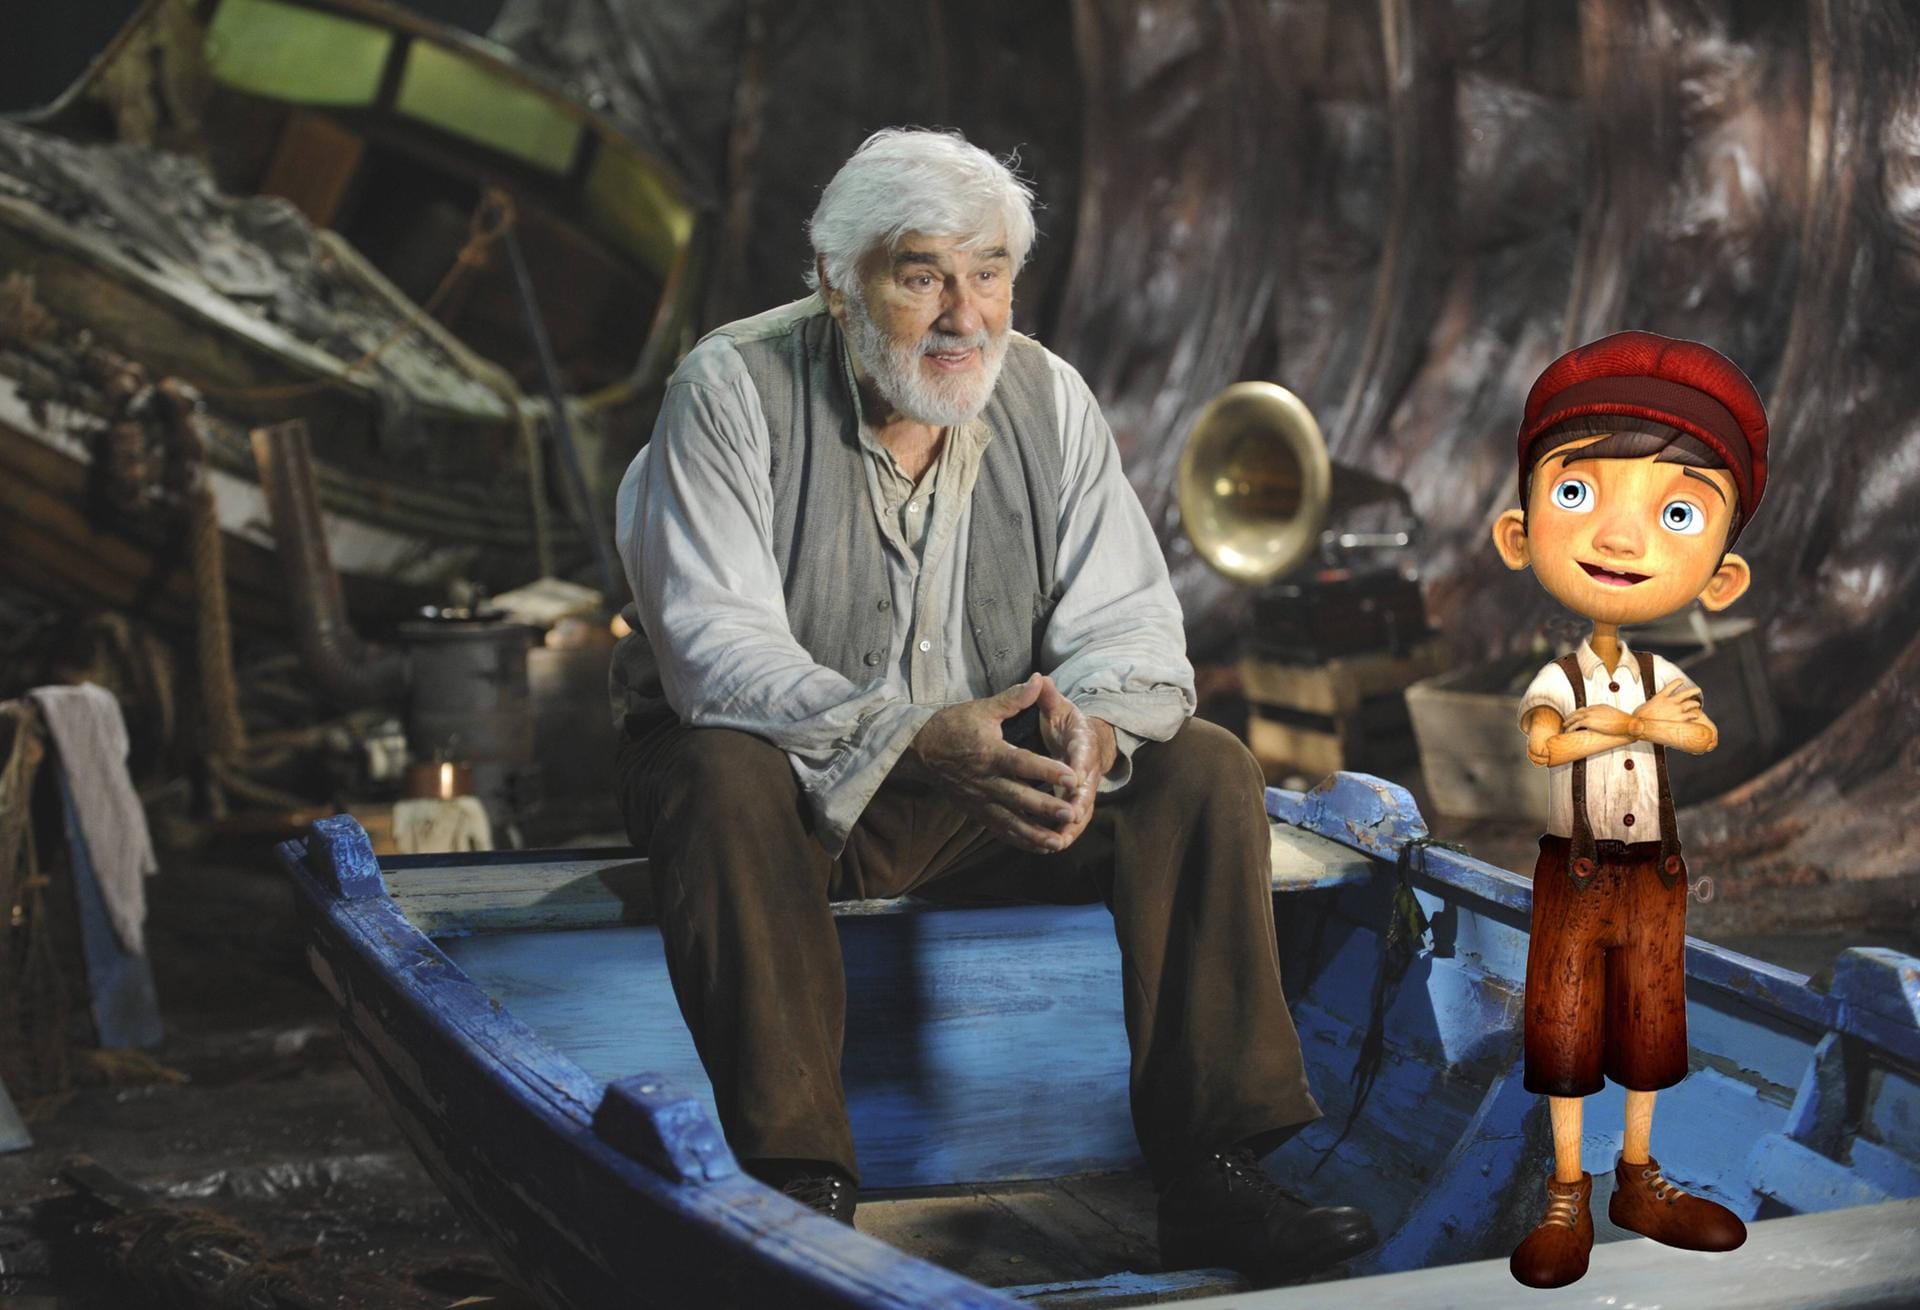 2013: "Pinocchio"